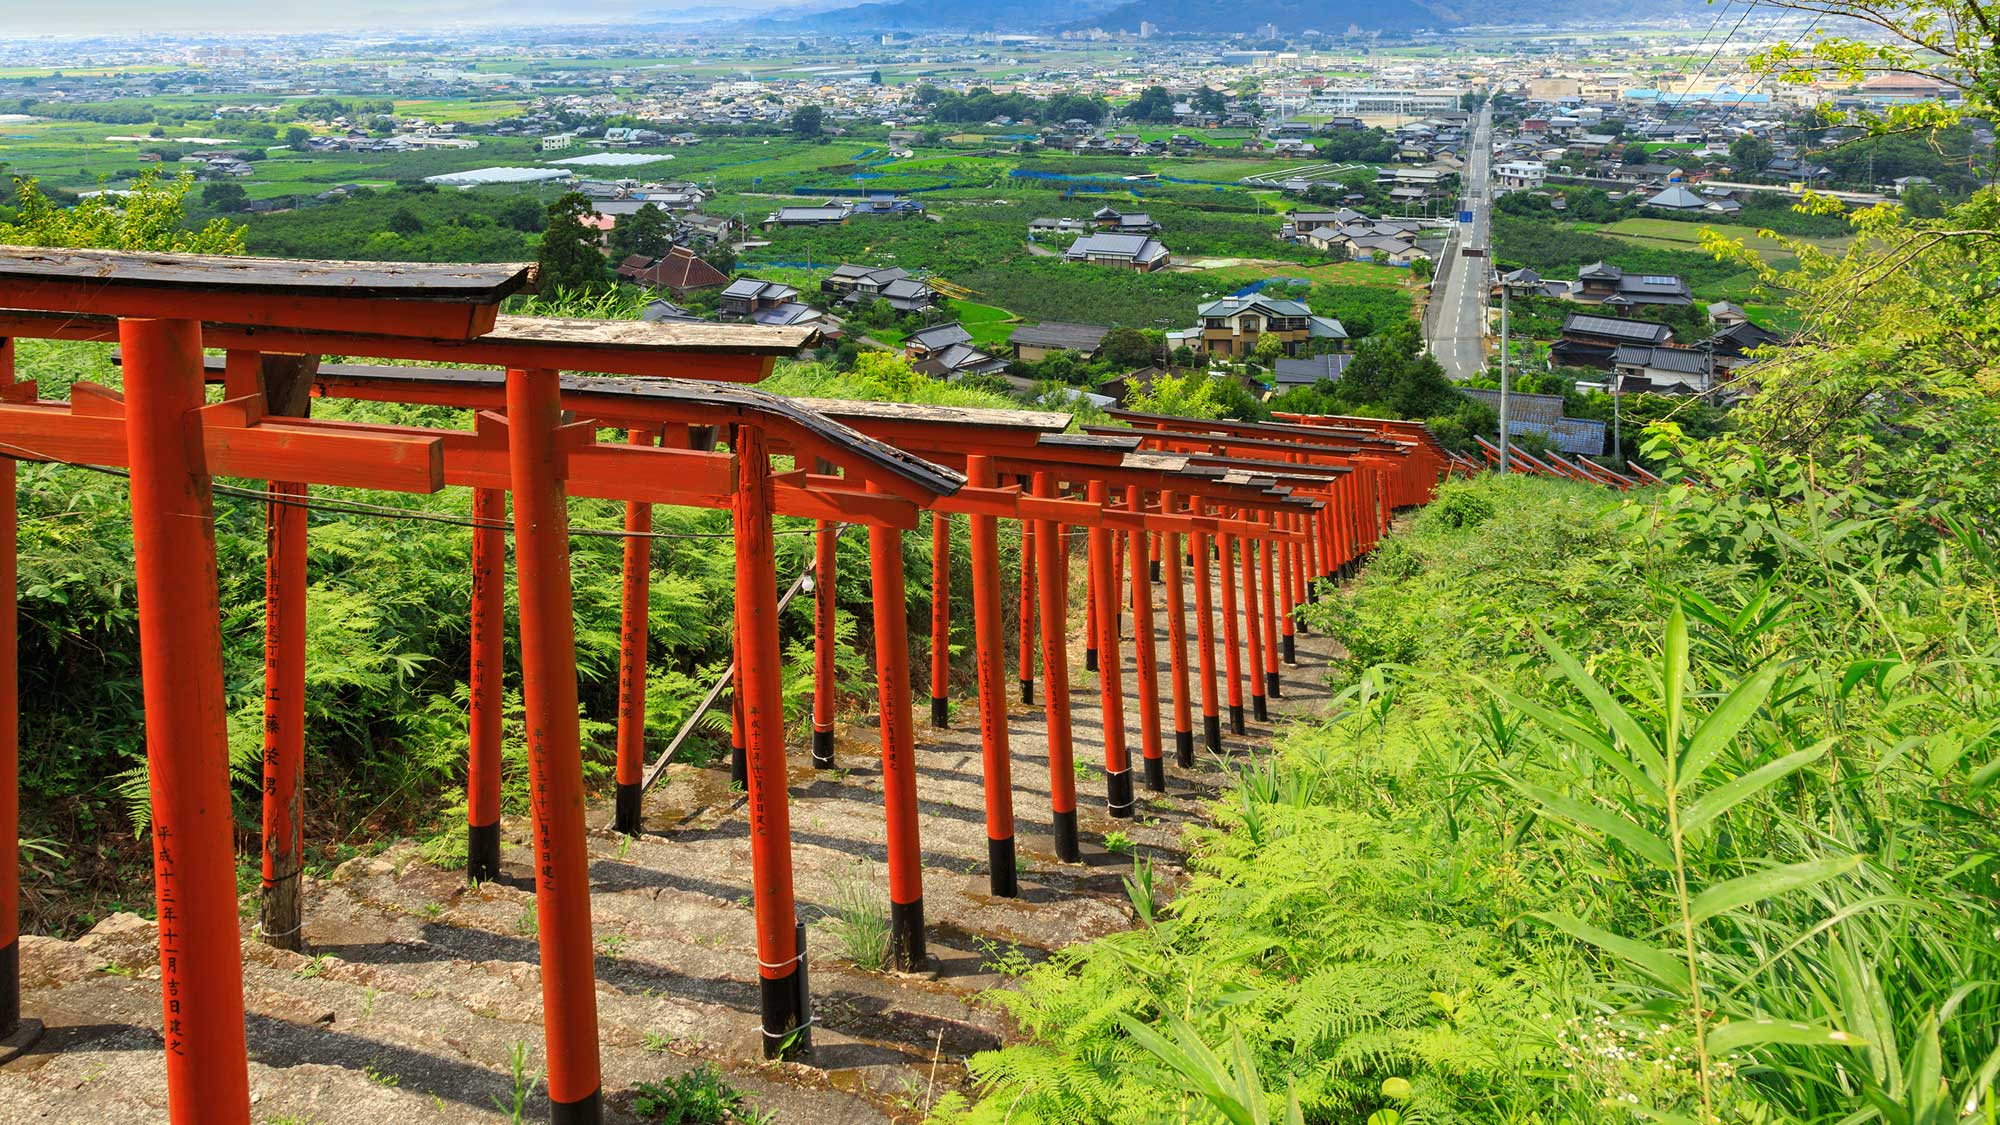 【周辺観光】うきは市を一望できる浮羽稲荷神社。鳥居の雰囲気が素晴らしいと評判です。＜車で60分＞